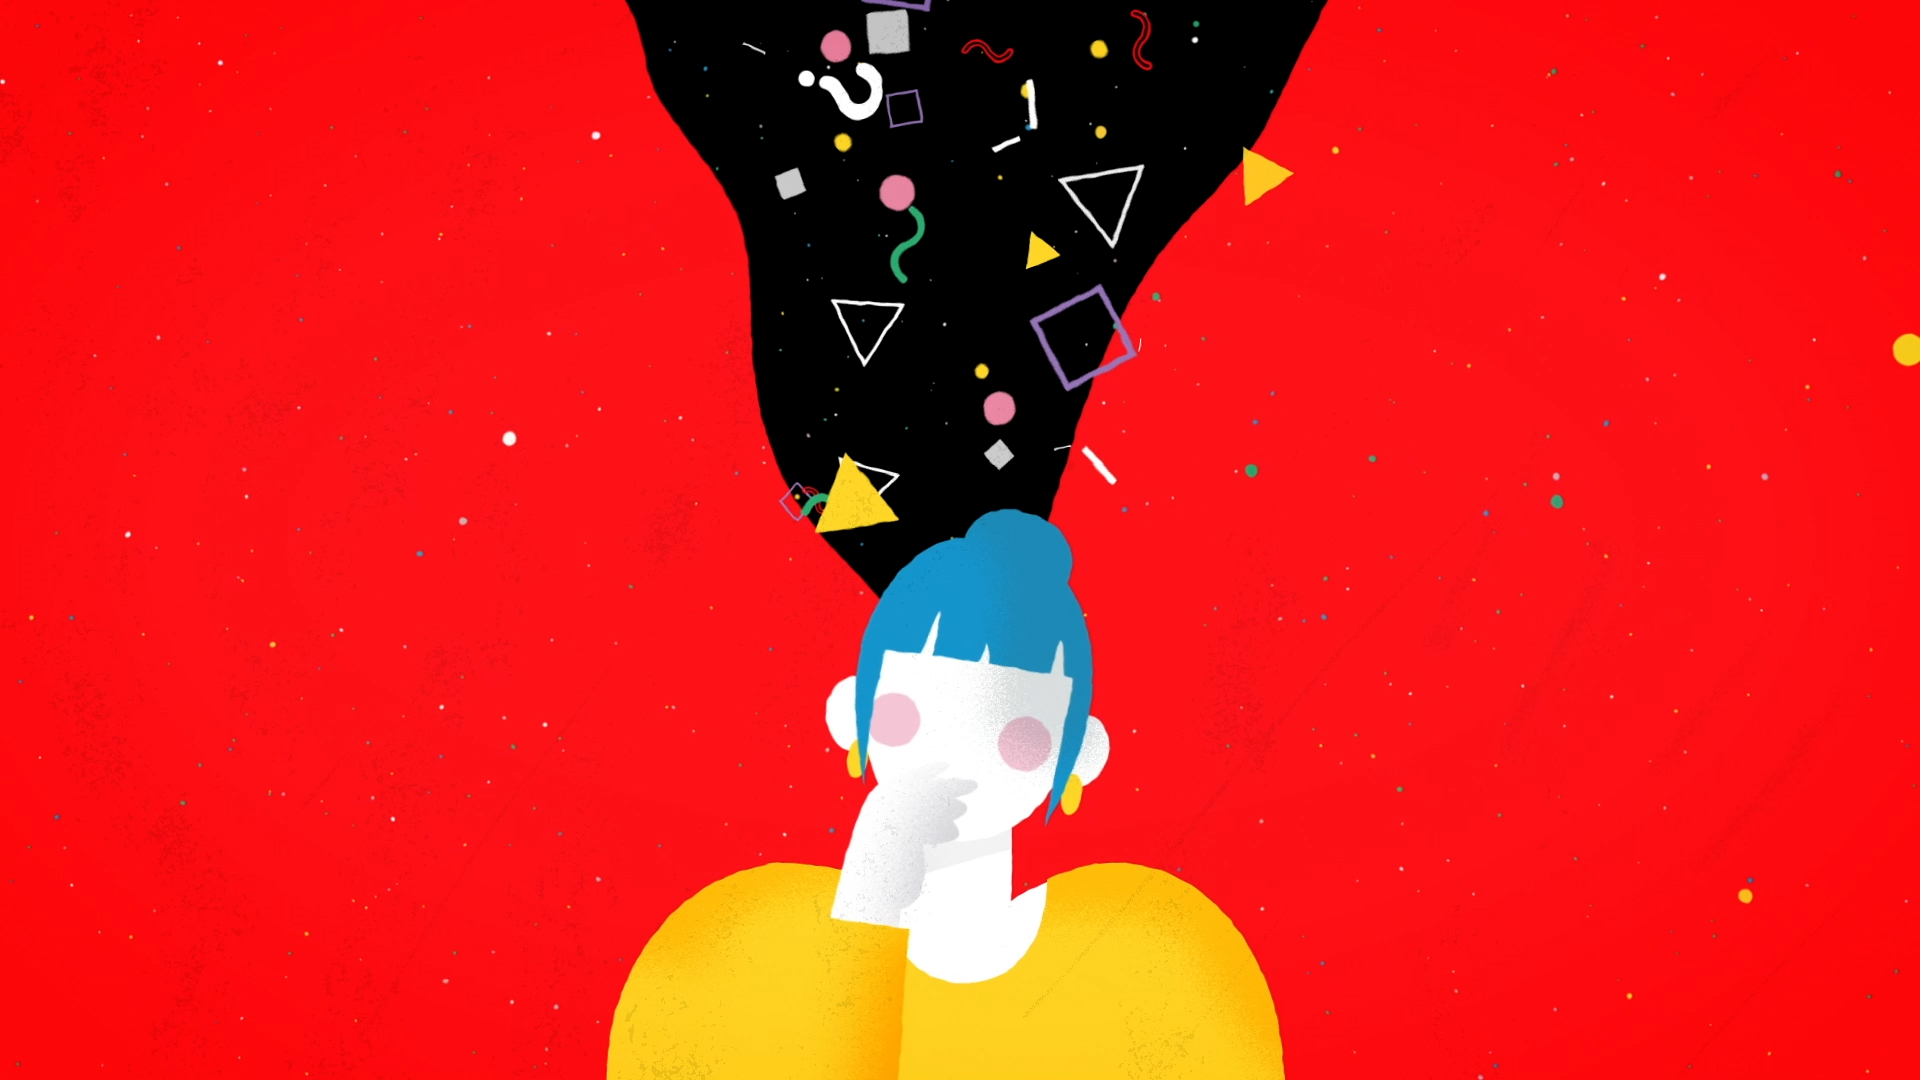 Imagen estática del vídeo corporativo de animación. Una mujer con cabello azul y una camisa amarilla se encuentra frente a un fondo rojo. Desde su cabeza emergen diversas formas y signos de interrogación en un fondo negro. La mujer está pensando.